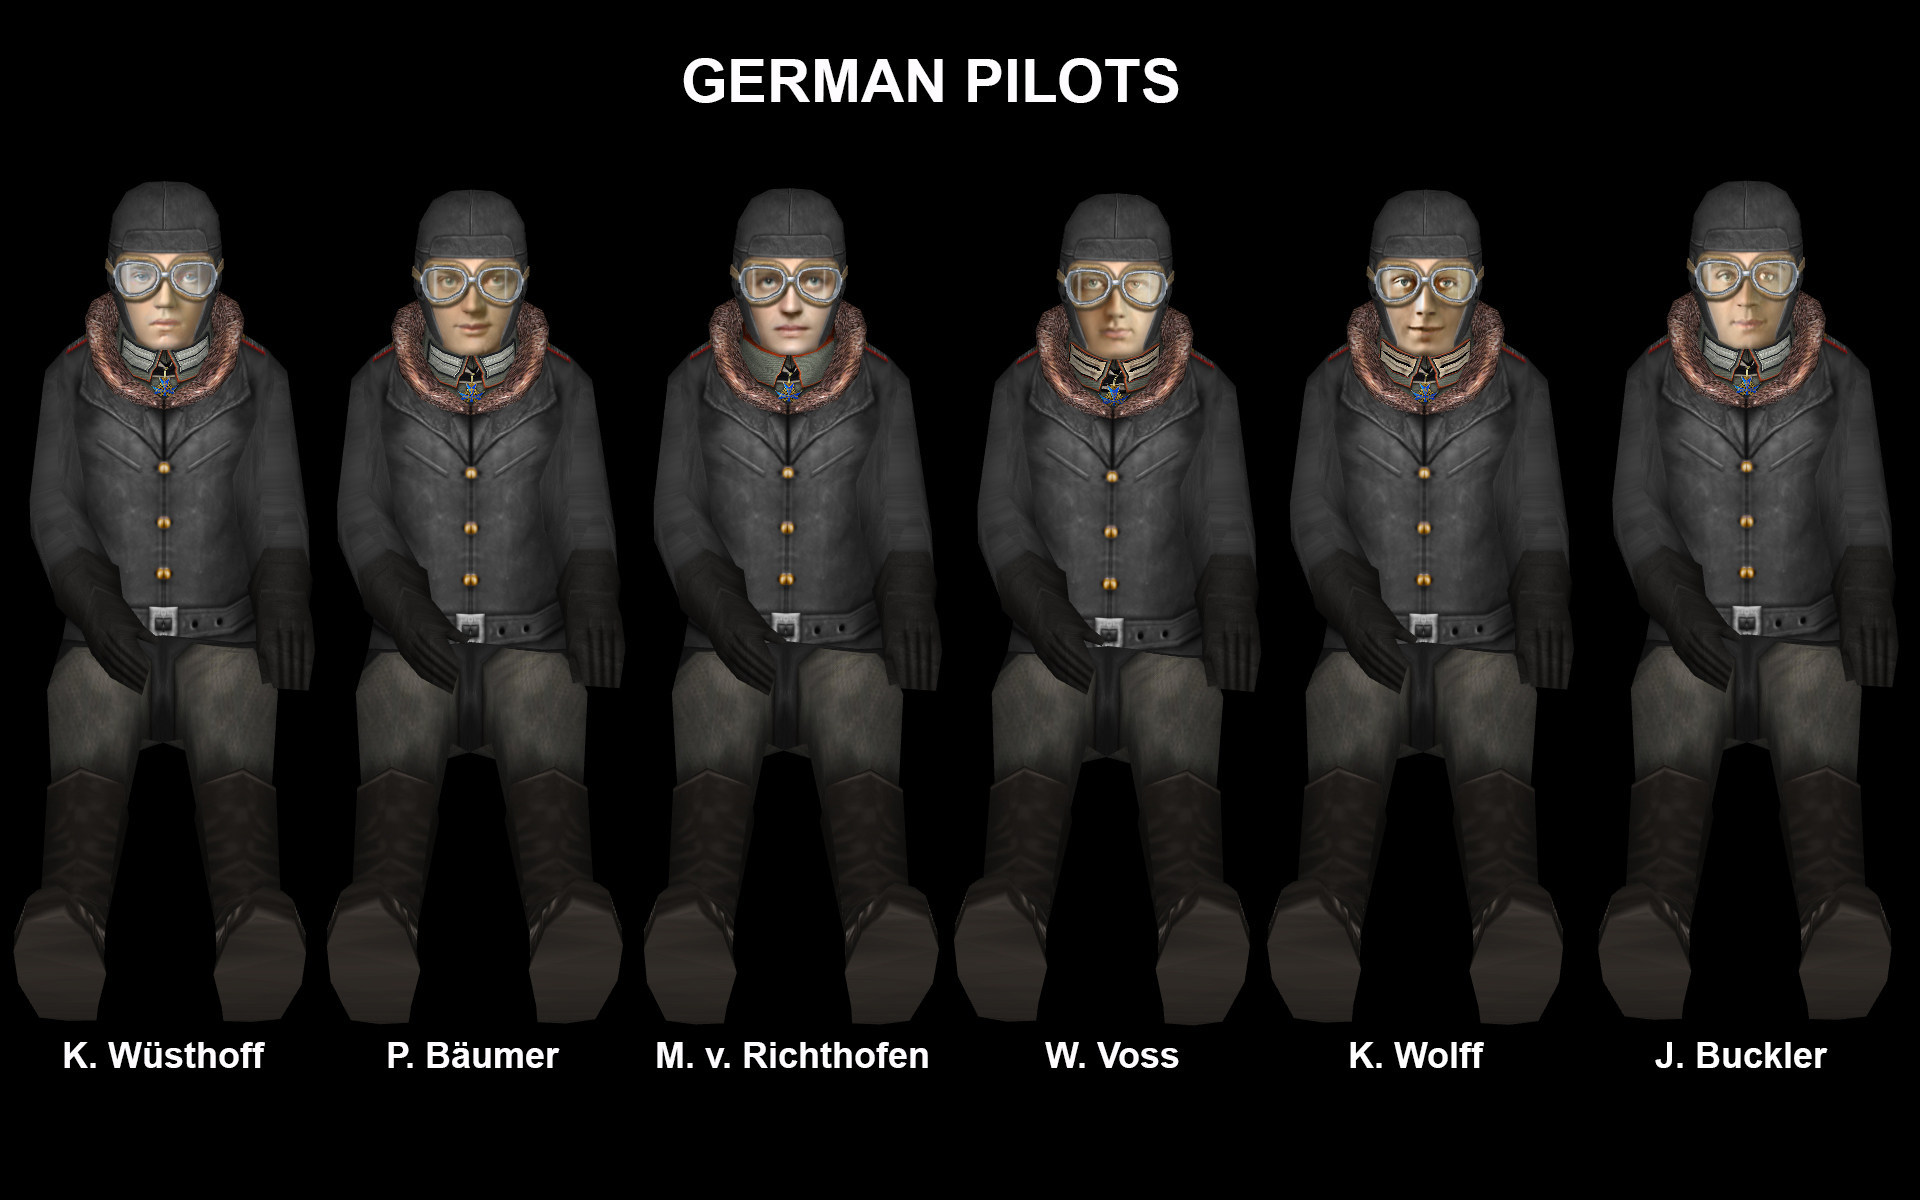 Geezer Germans pilots for FE2